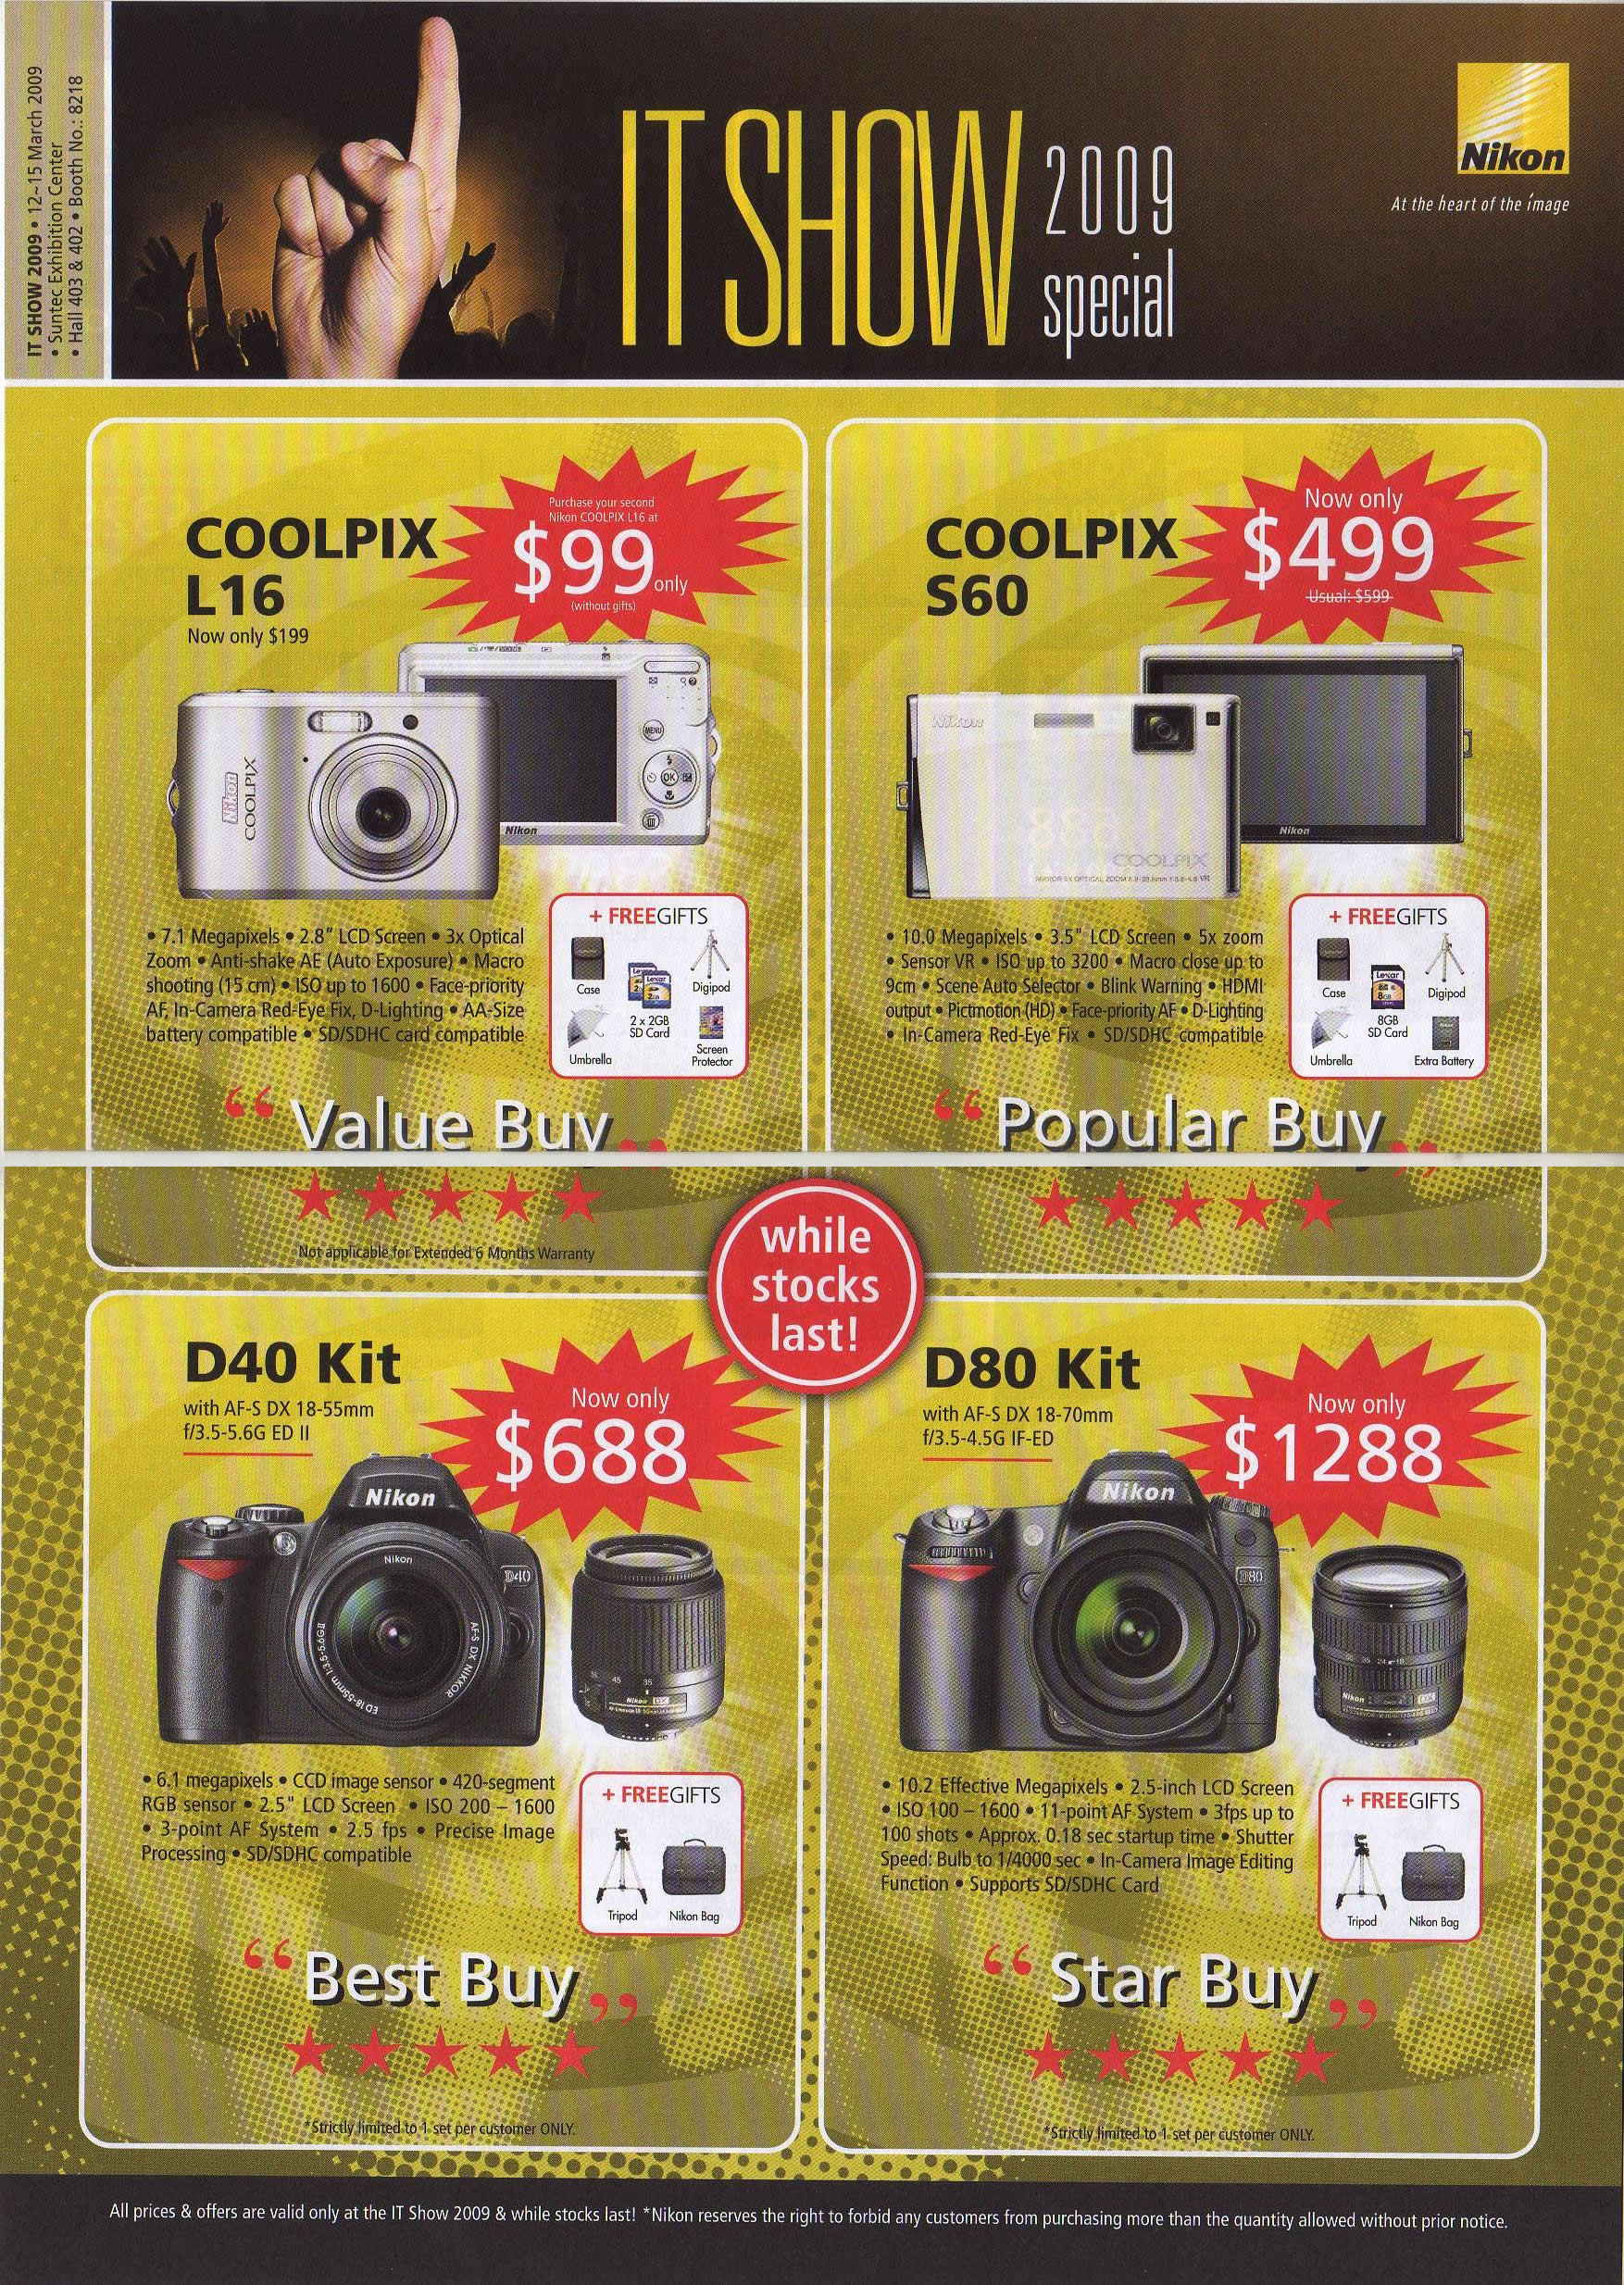 IT Show 2009 price list image brochure of Nikon CoolPix DSLR (coldfreeze)